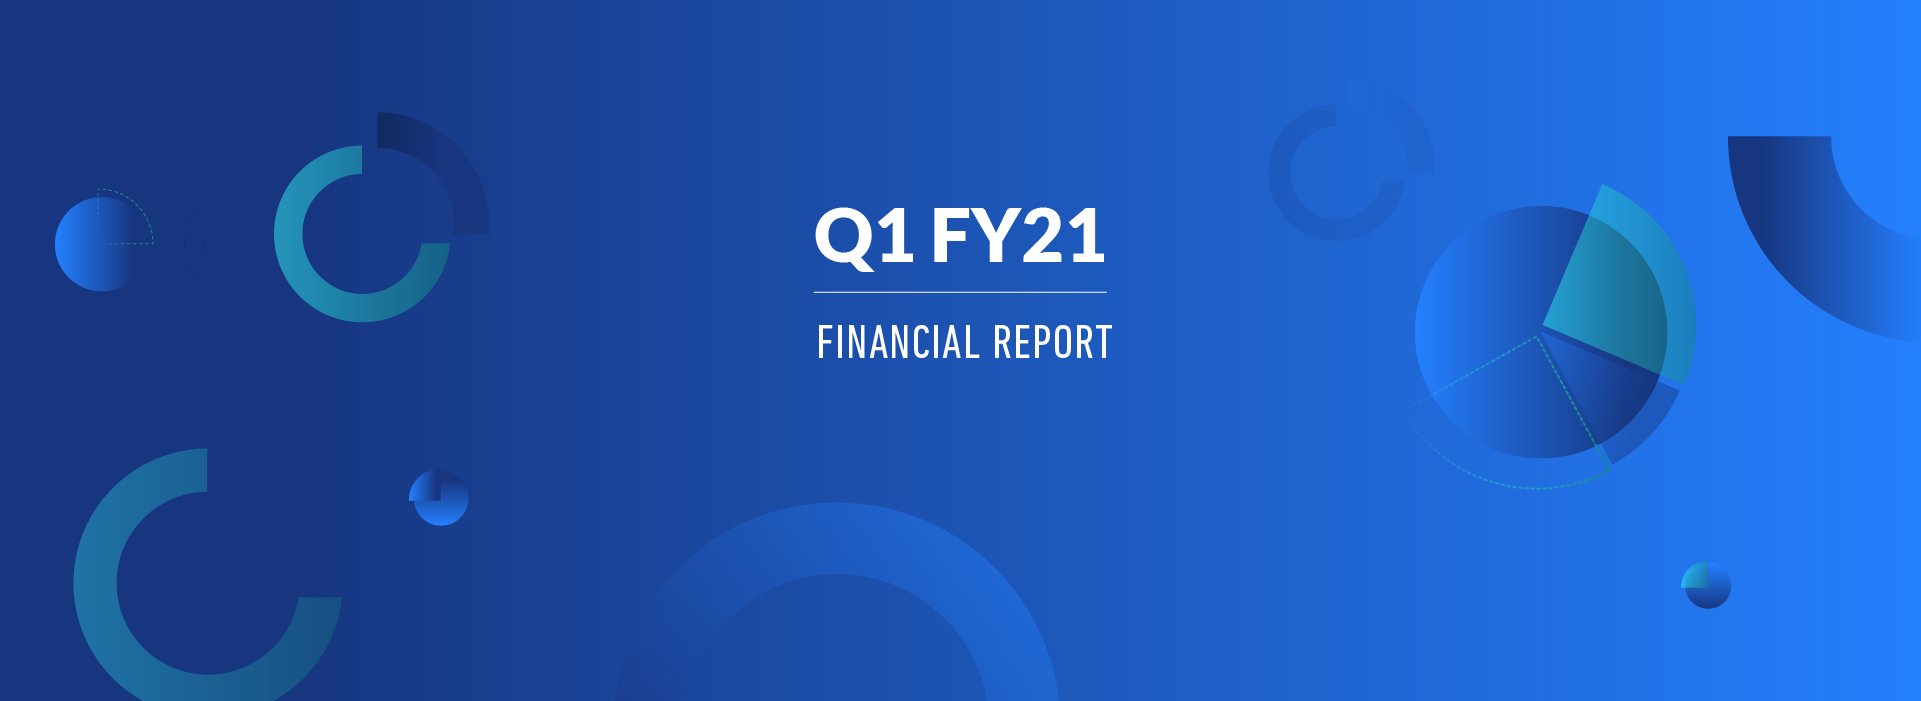 PR_FY21-Financial-Report_banner_web_v2